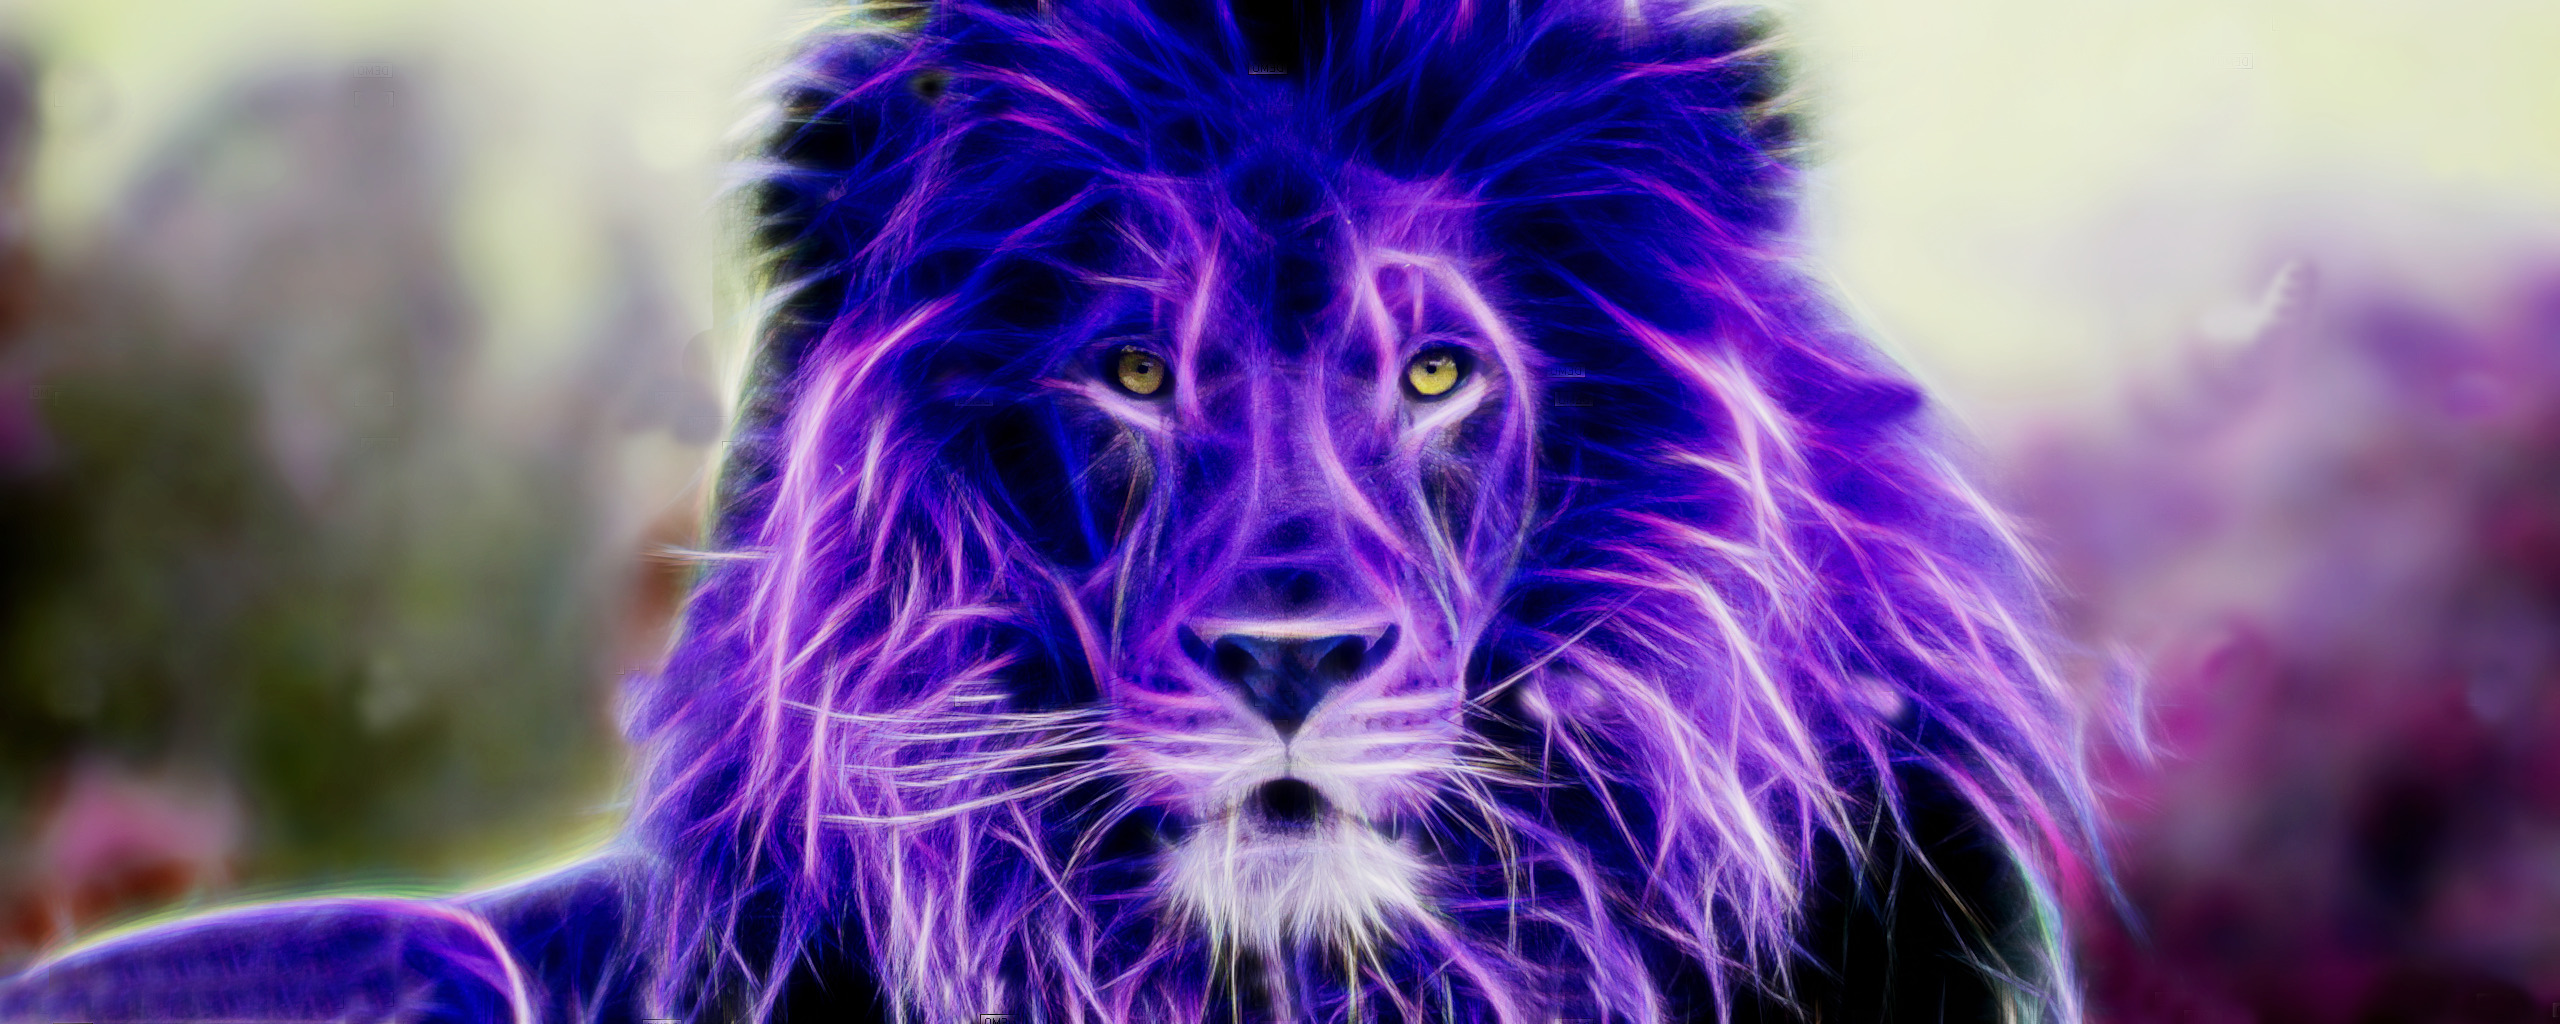 lion colorful fractalius Wallpaper